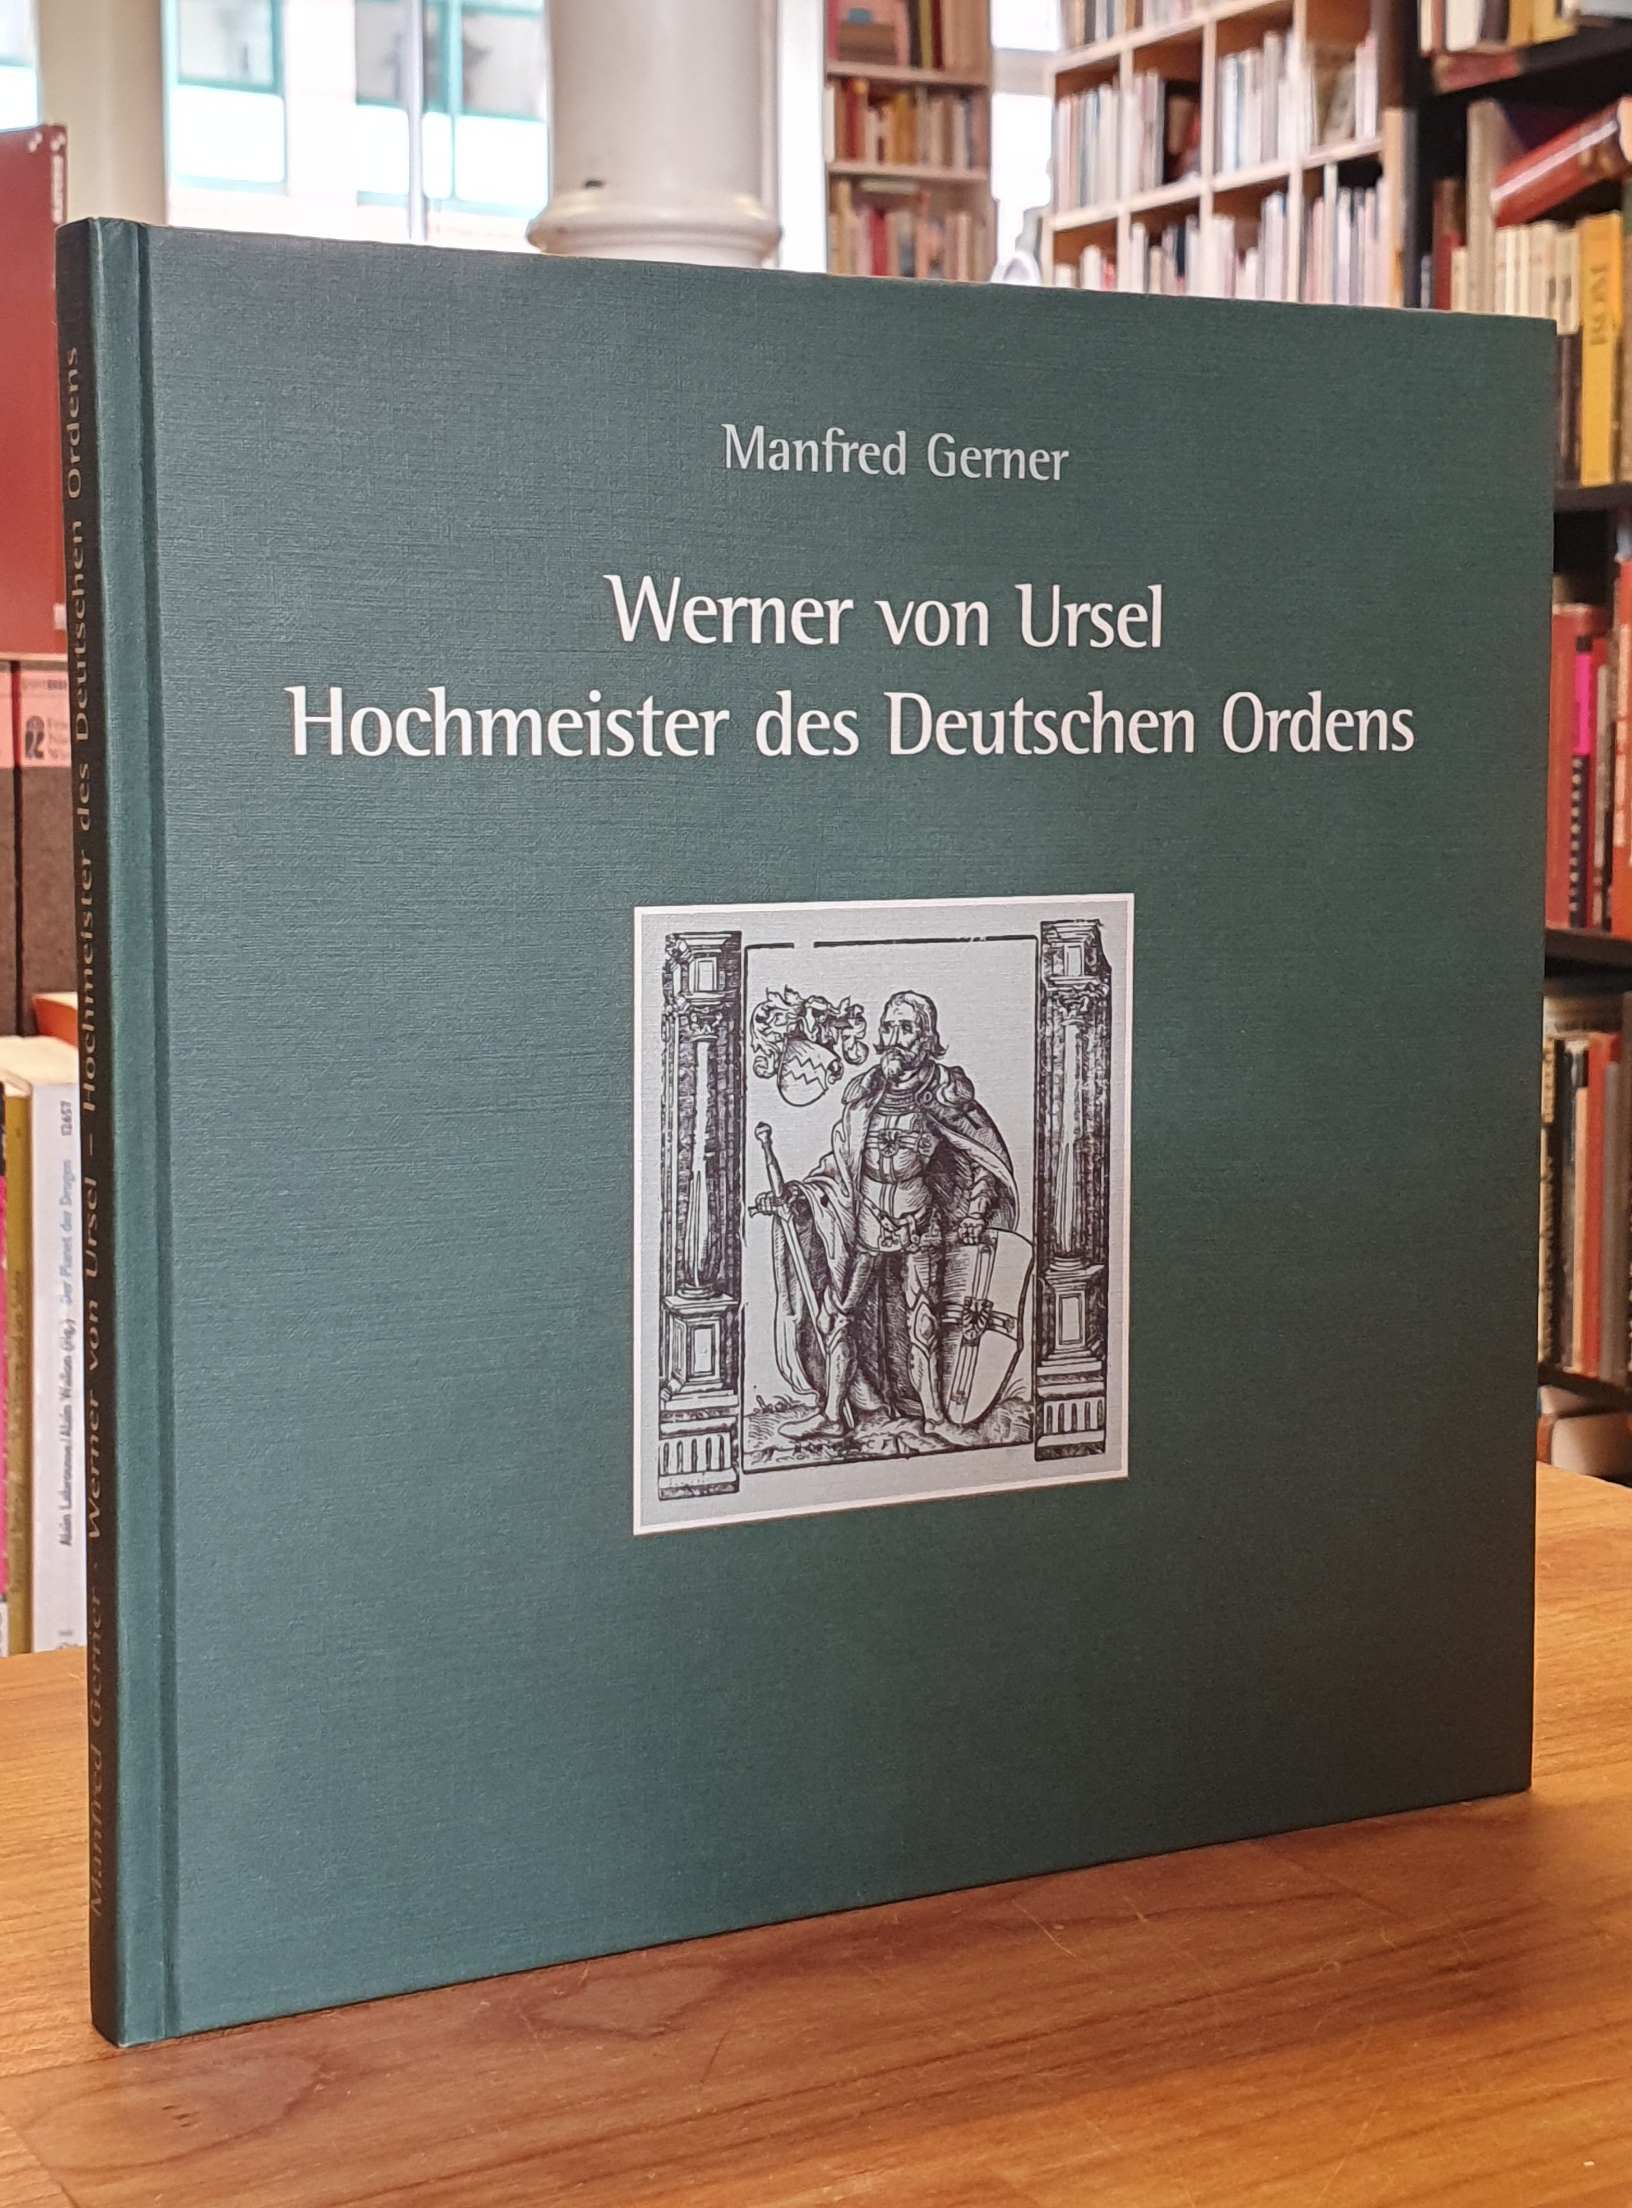 Niederursel / Gerner, Werner von Ursel – Hochmeister des Deutschen Ordens und Ch